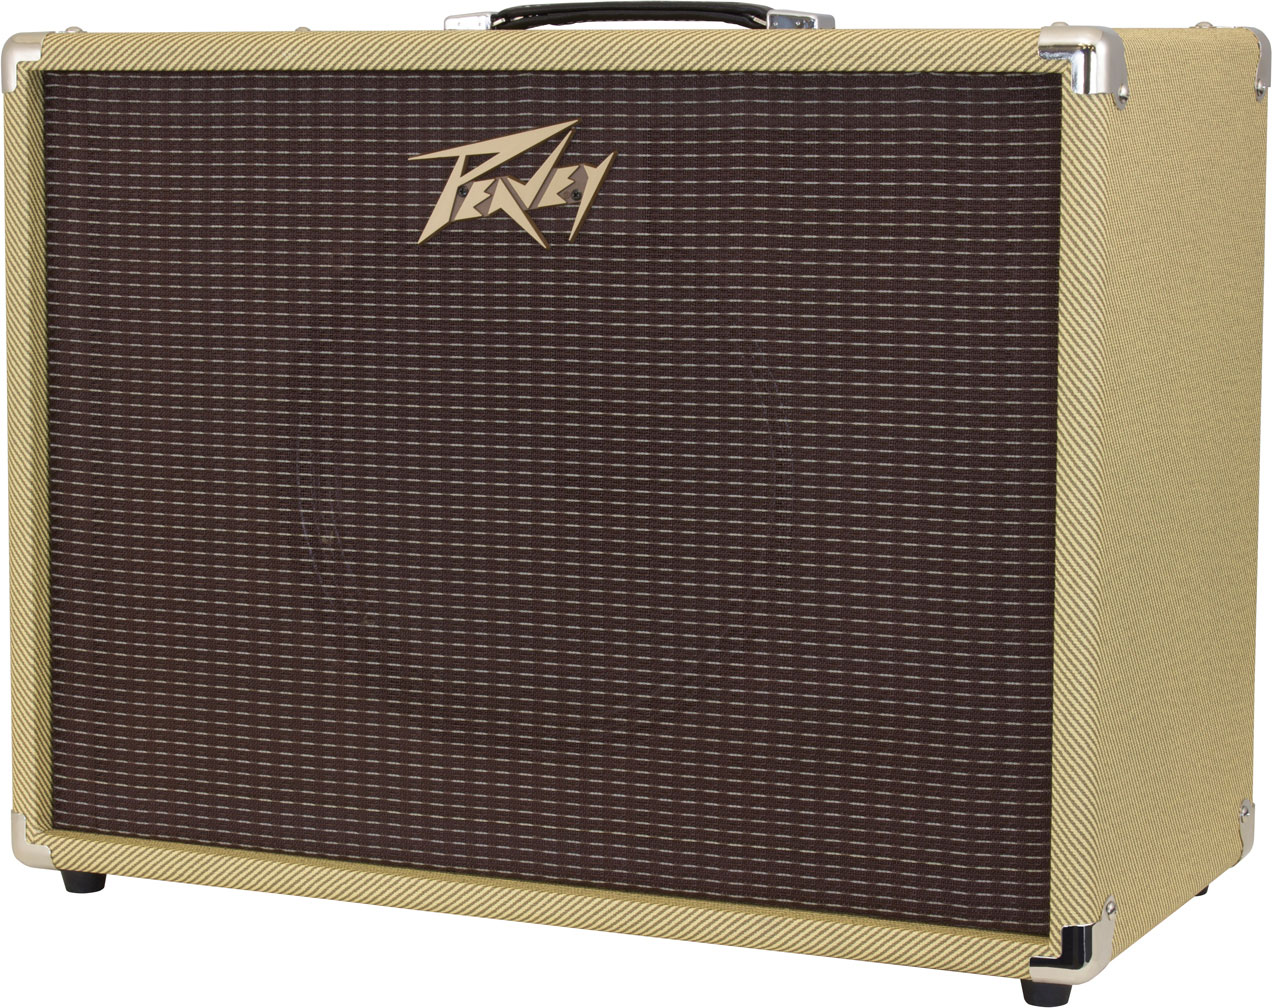 Peavey 112-c Guitar Enclosure 1x12 60w 16-ohms Tweed - Cabina amplificador para guitarra eléctrica - Variation 1